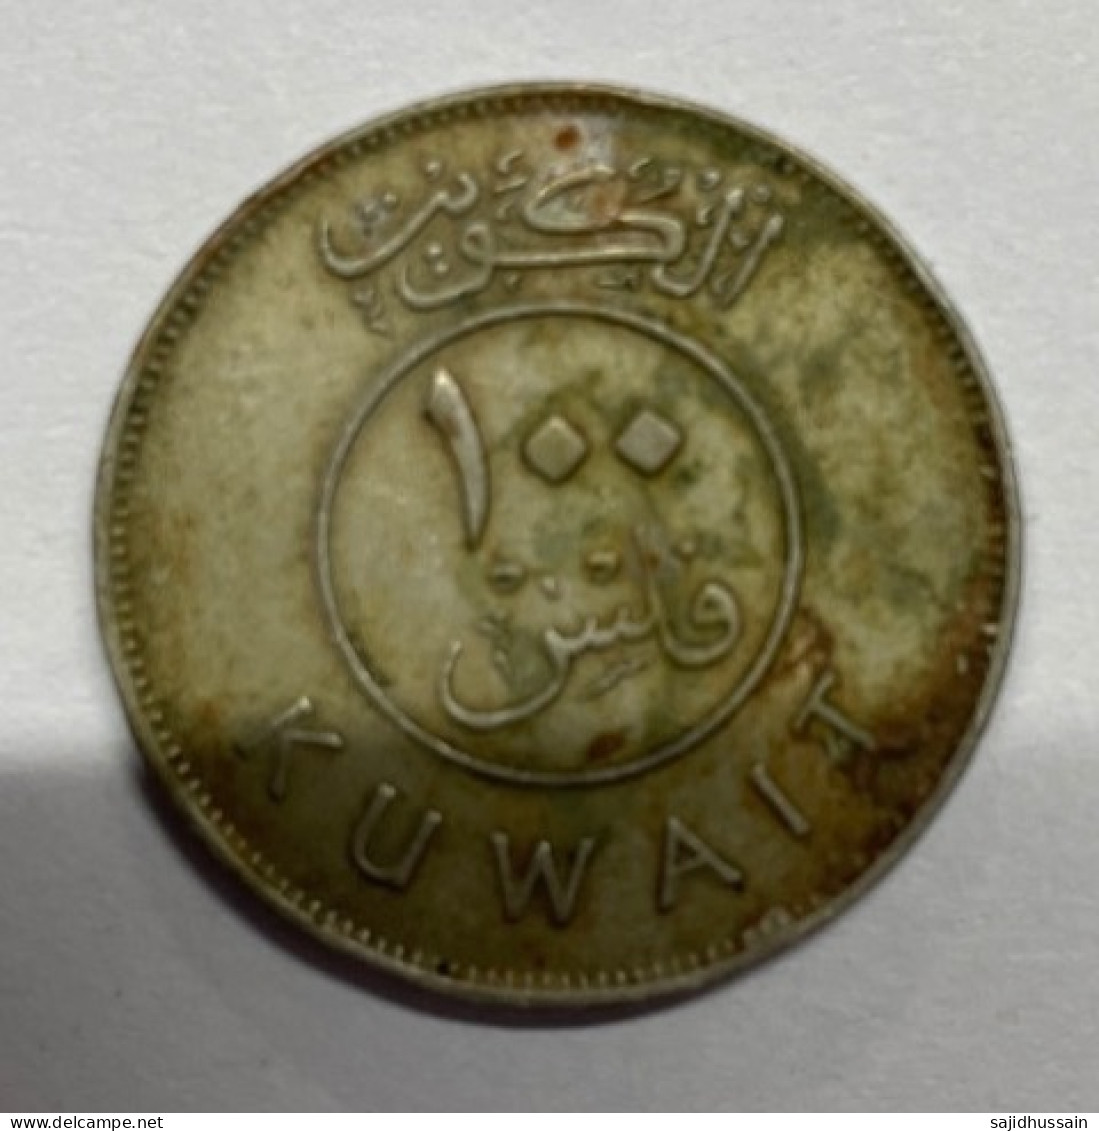 Kuwait Coin Of 100 Fils - Kuwait